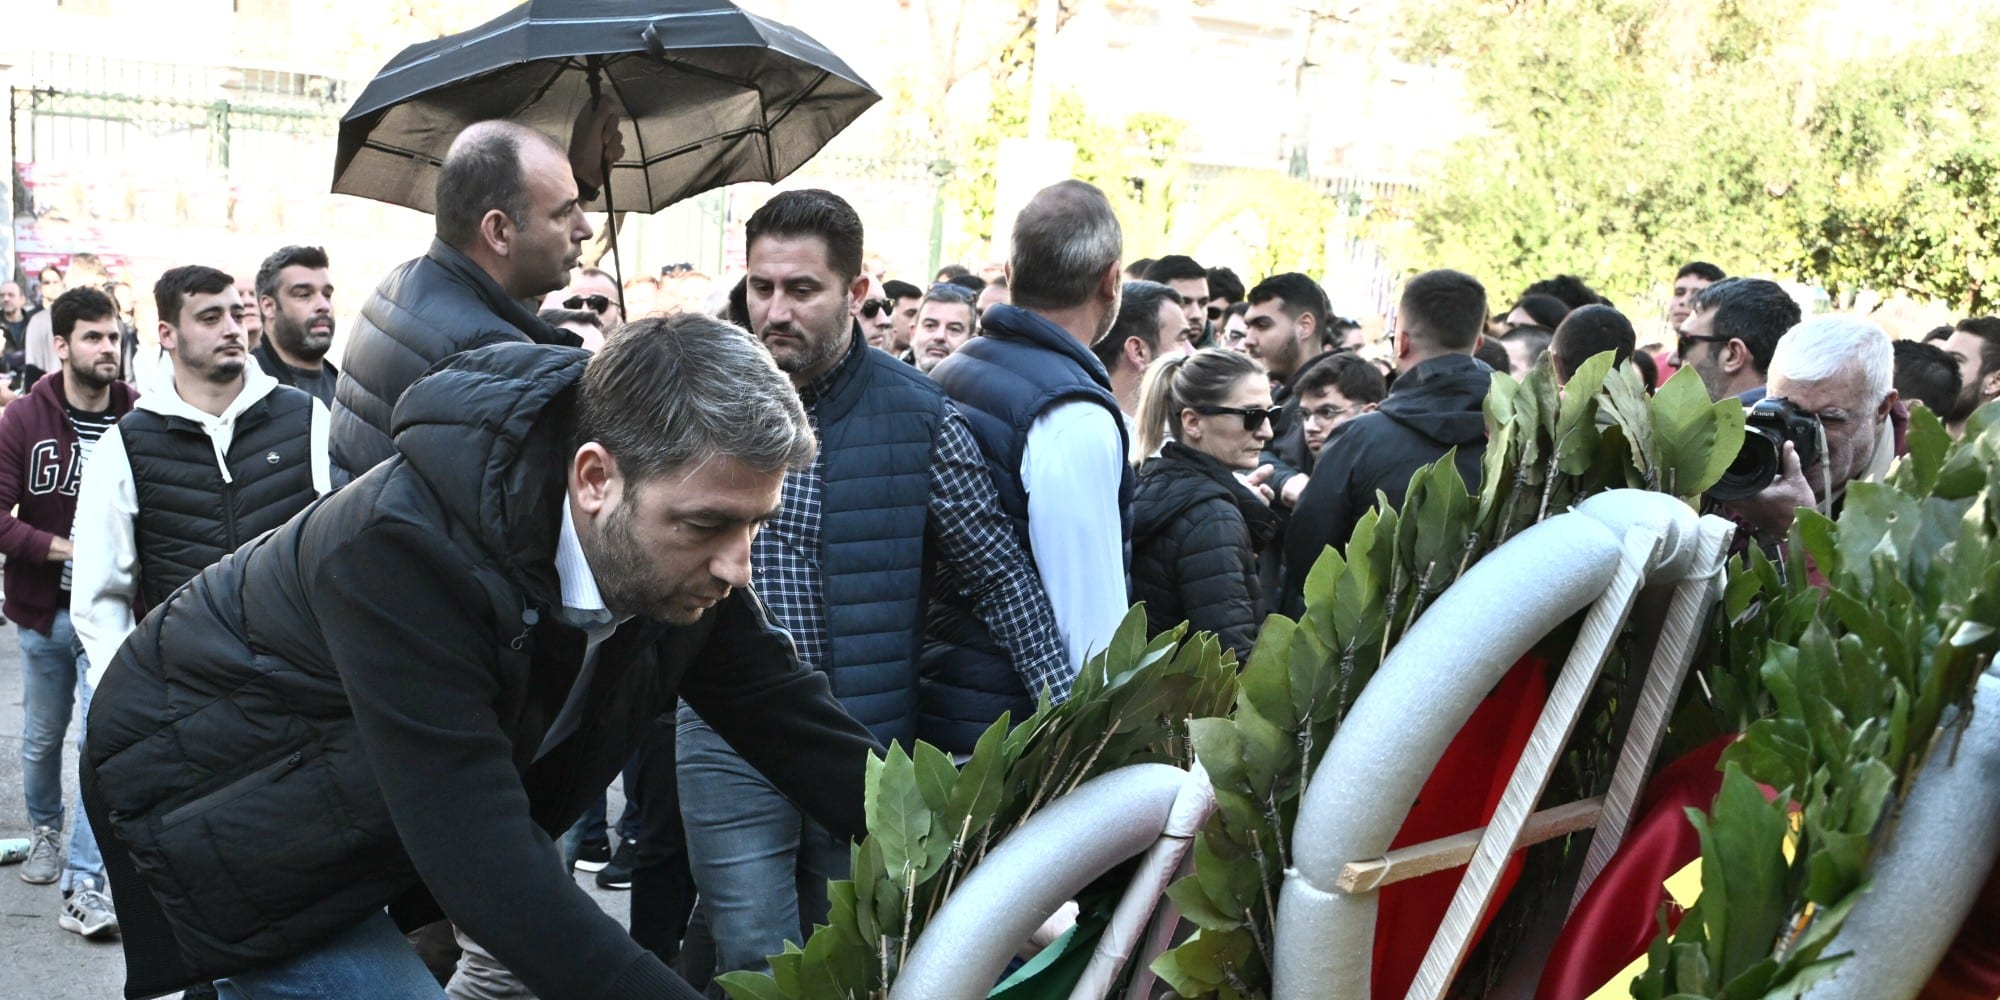 Πολυτεχνείο: Ο Ανδρουλάκης πήγε να καταθέσει στεφάνι και δέχθηκε άγρια επίθεση - Του πέταξαν καφέδες (εικόνες)